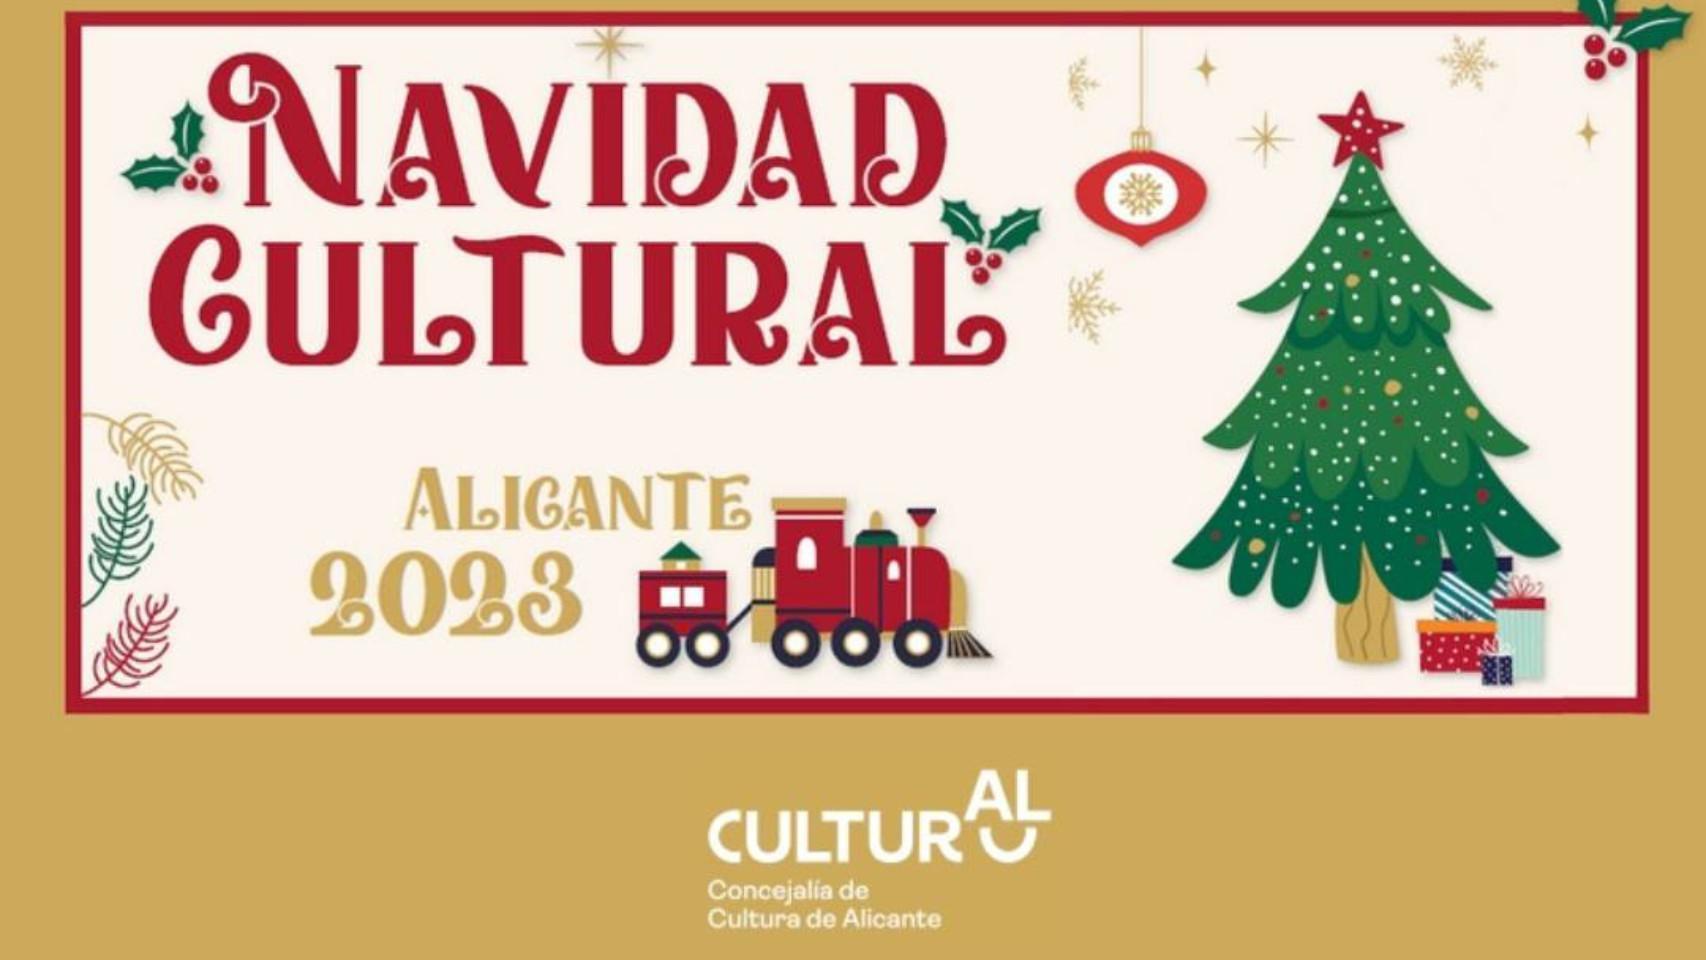 Talleres, visitas guiadas, música y danza: estos son los planes culturales de Alicante para Navidad